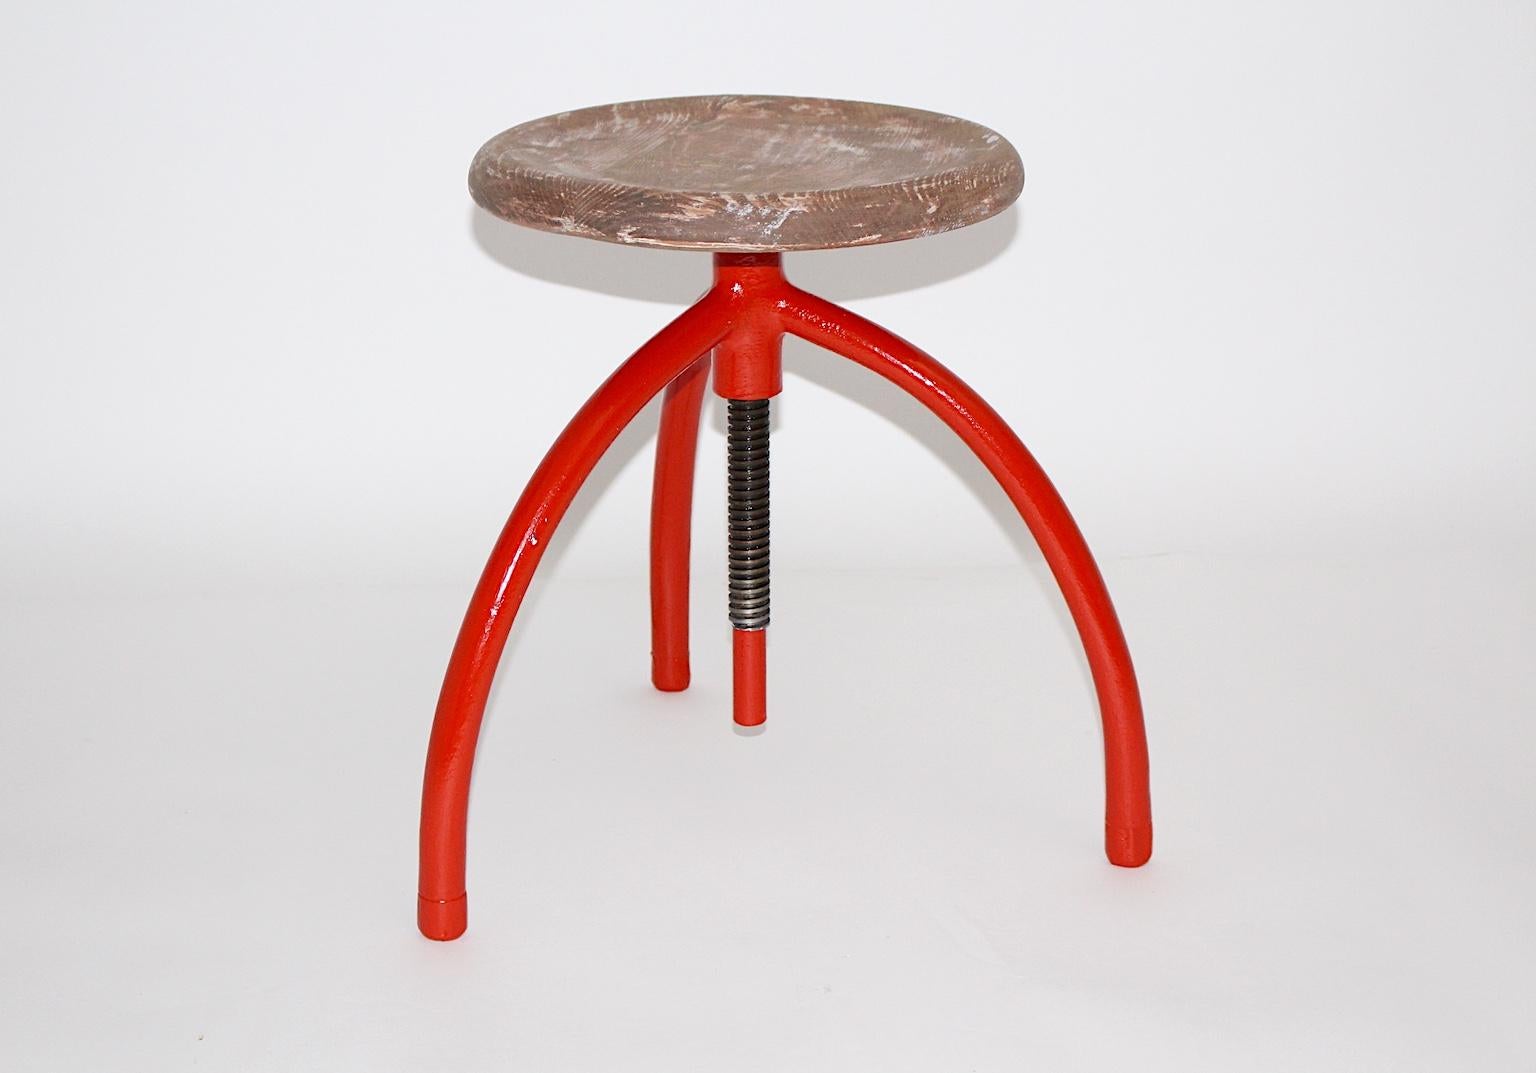 Ein roter Metall-Drehhocker, entworfen von Margarete Schuette-Lihotzky, 1920er Jahre.
Margarete Schuette-Lihotzky, (1897-2000).
Margarete Schuette-Lihotzky war eine der ersten Architektinnen und studierte bei Oskar Strnad und Heinrich Tessenow an